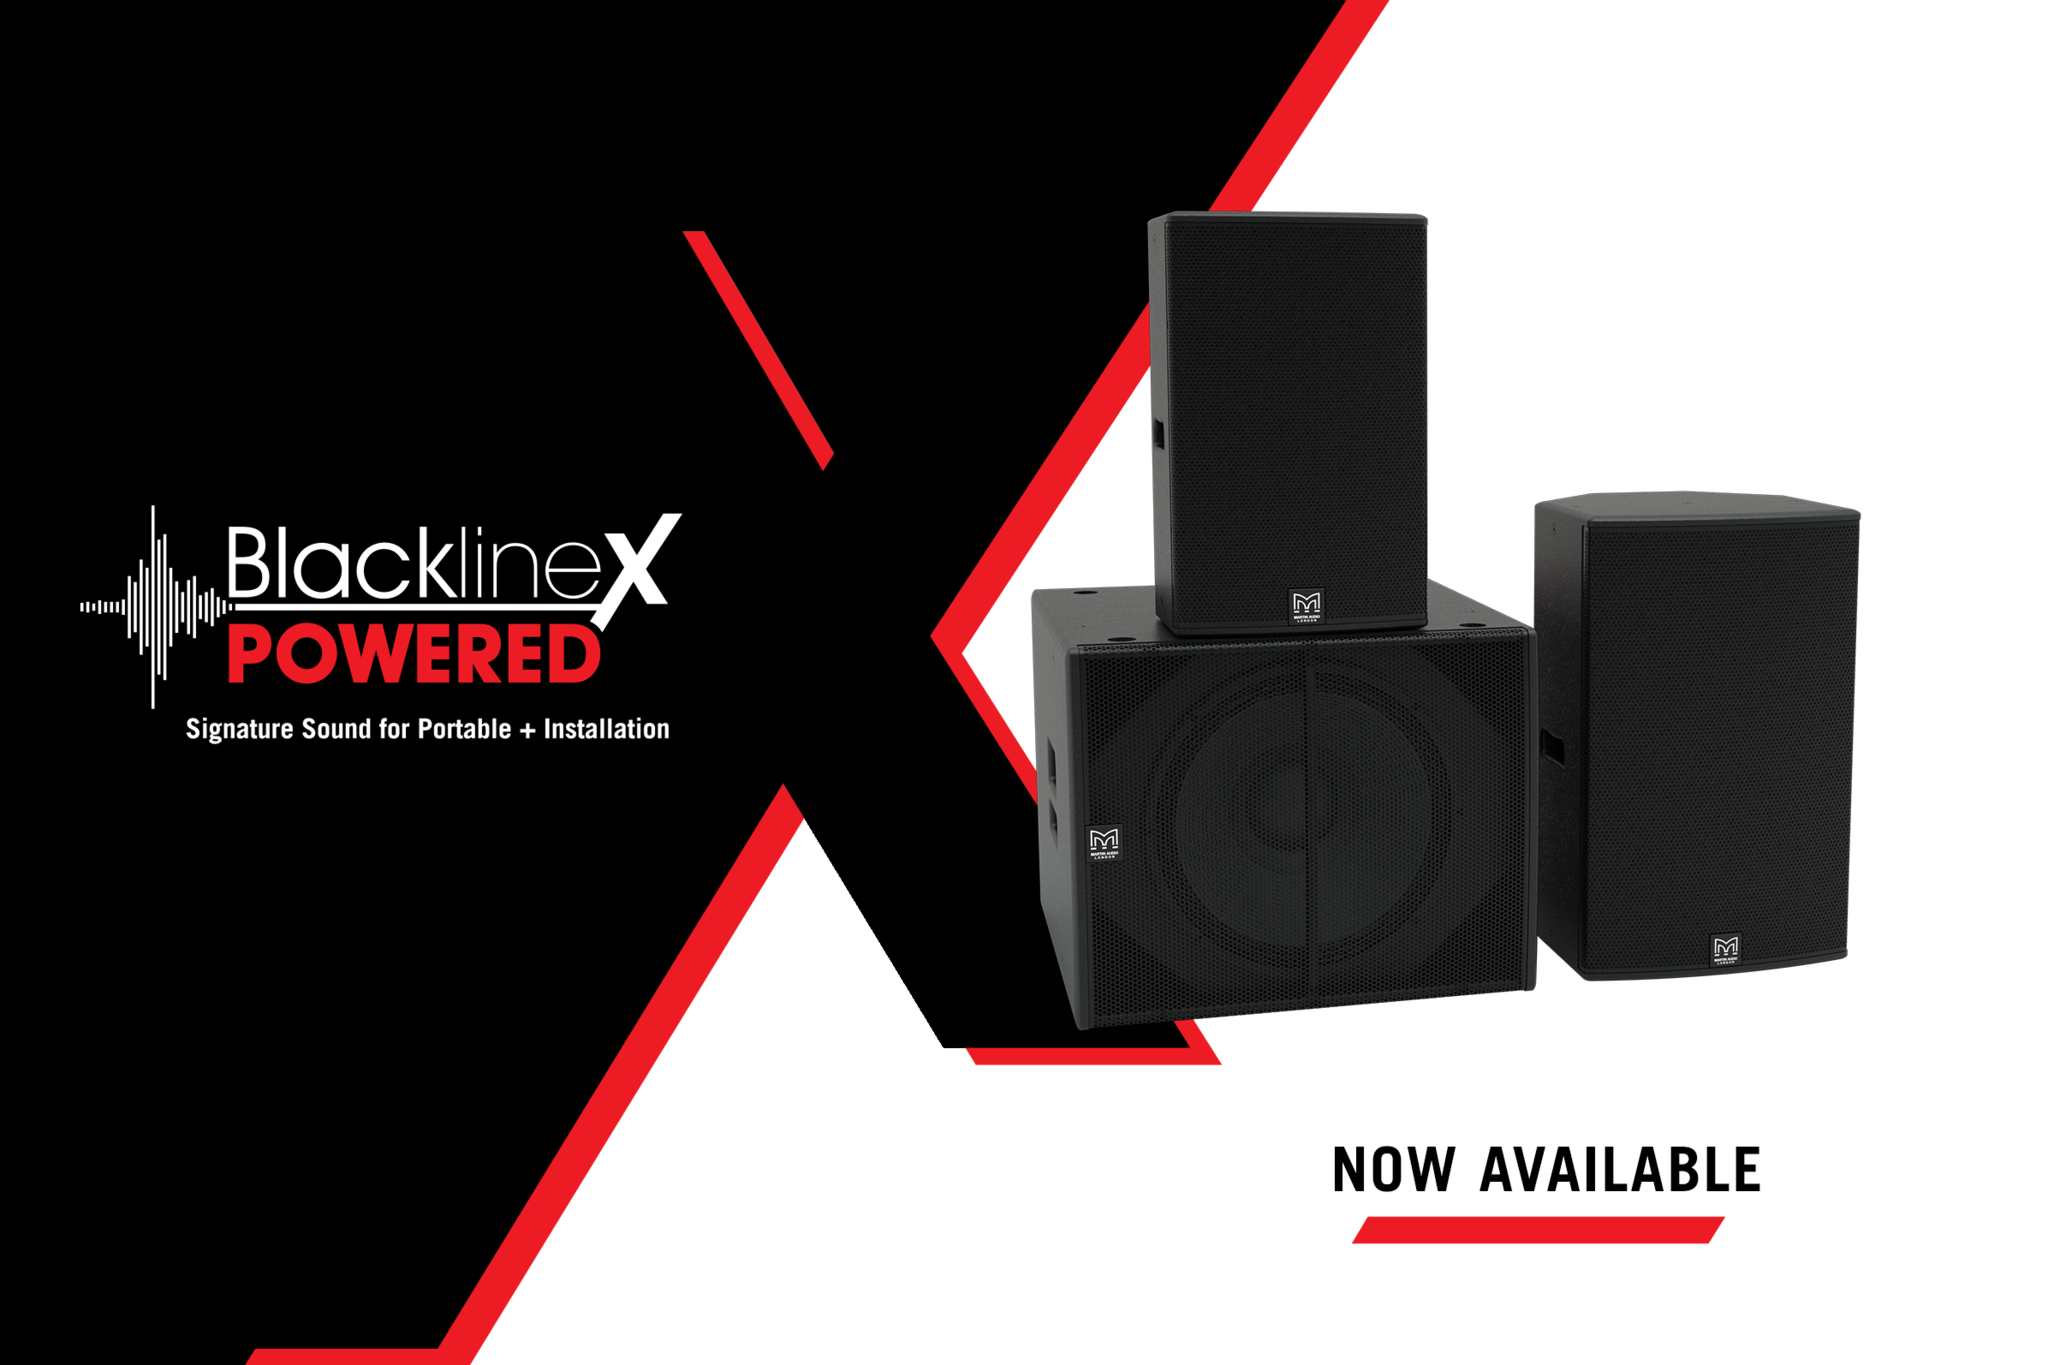 Martin Audio добавляет новый продукт в самый продаваемый модельный ряд портативной акустики компании - BlacklineX Powered